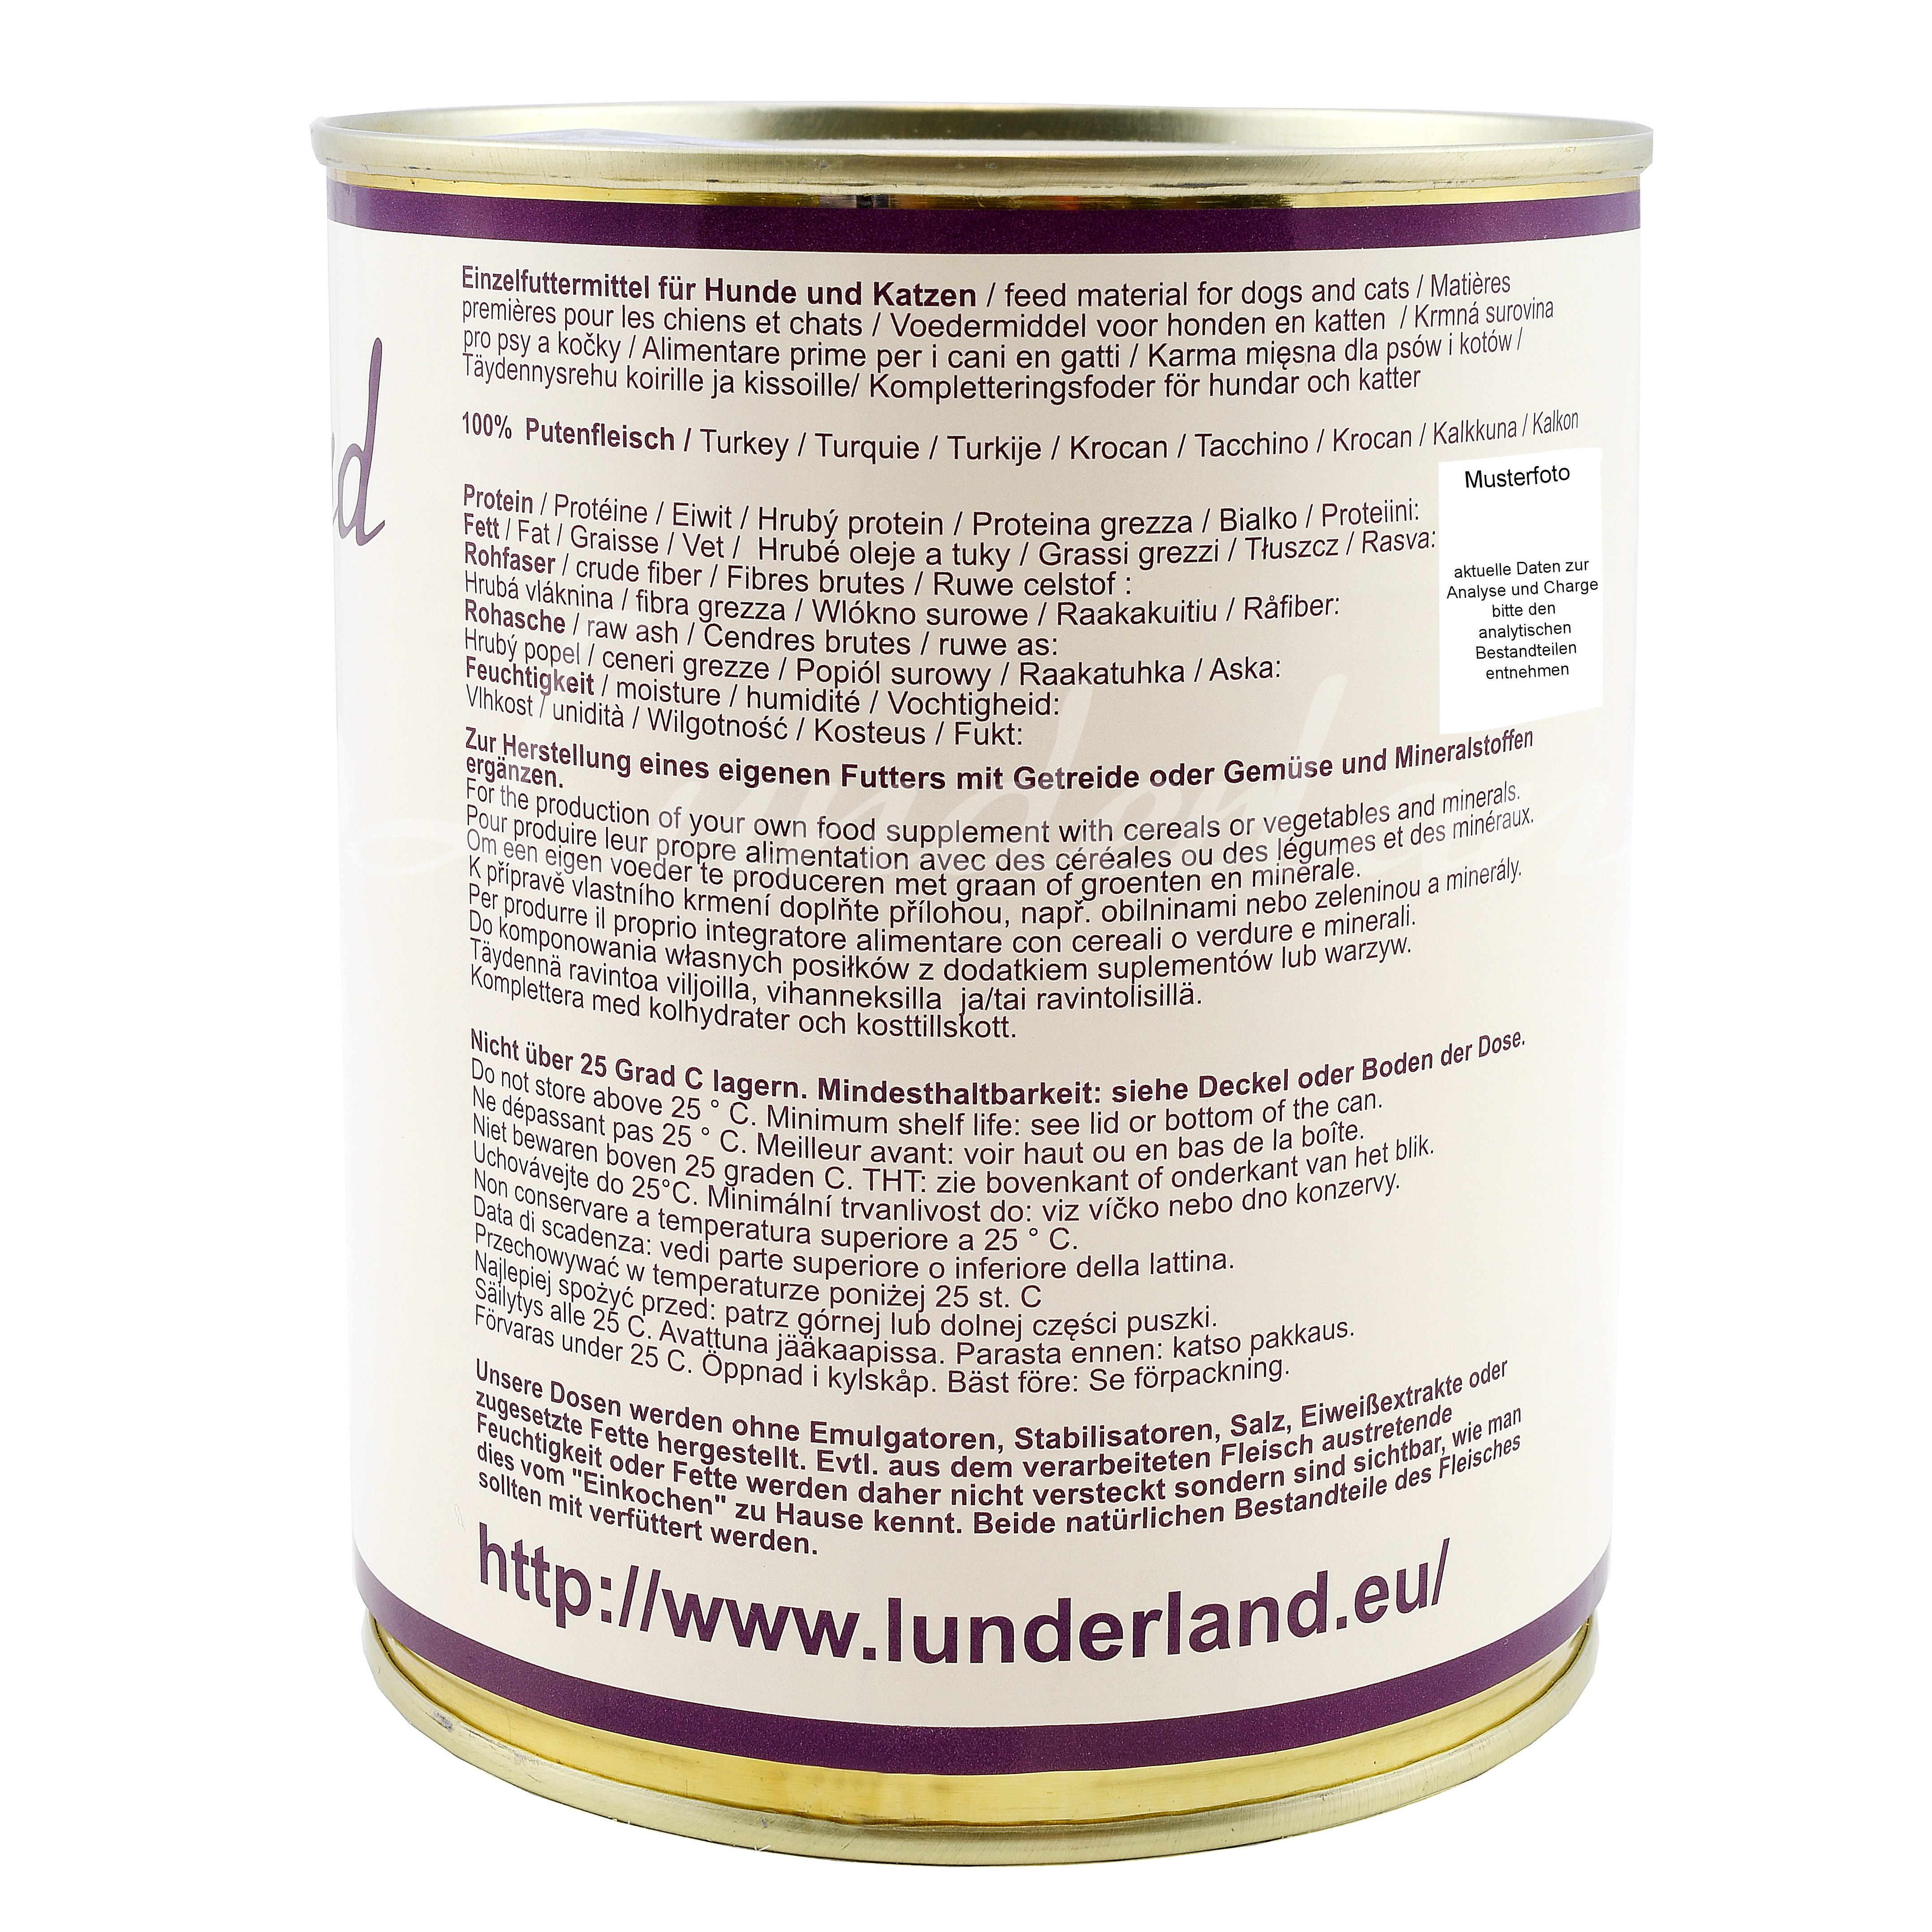 Lunderland-Dosenfleisch-Putenfleisch